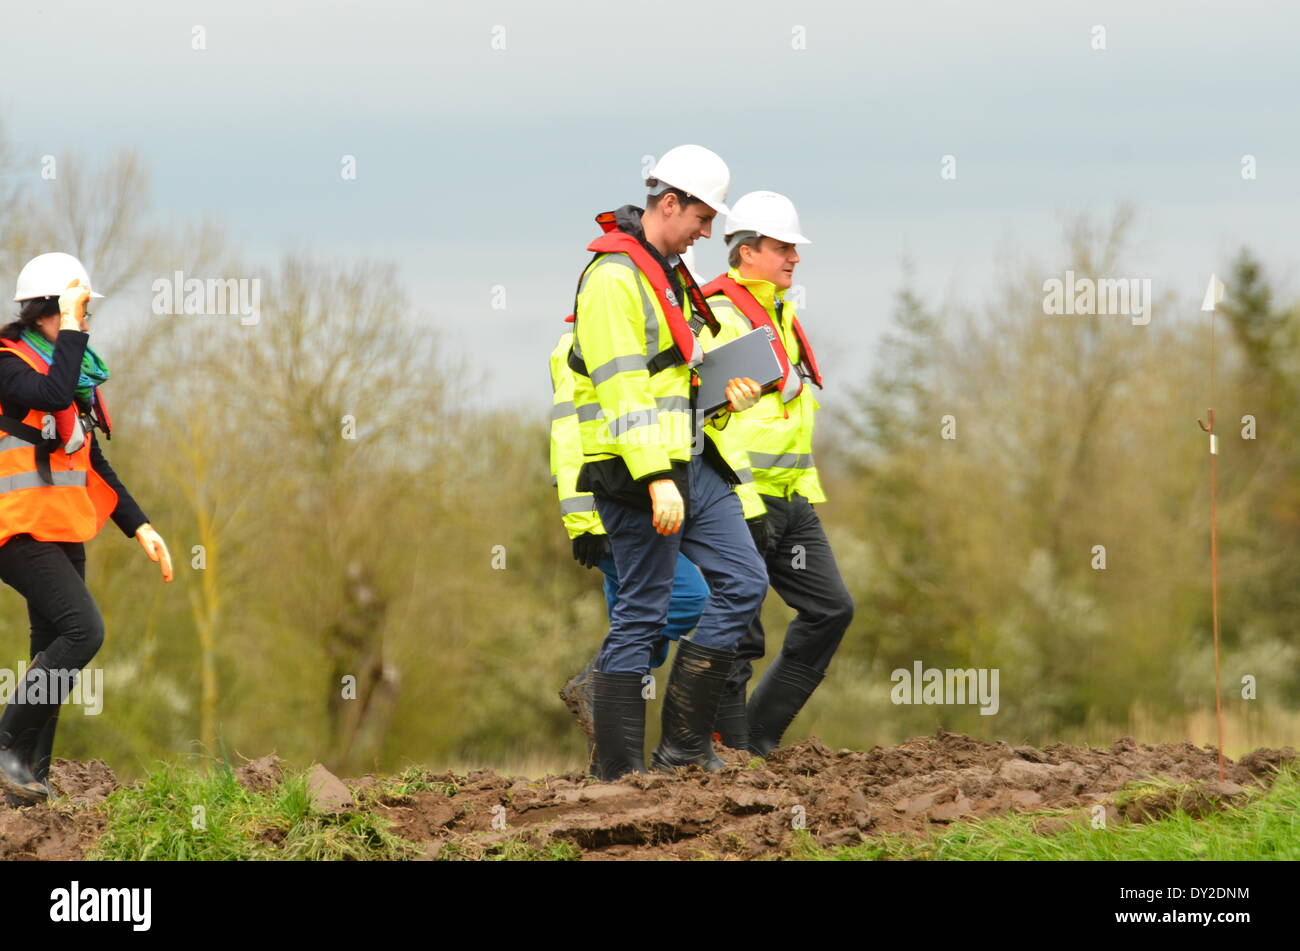 Burrowbridge, Somerset, UK . Le 04 Avr, 2014. Le premier ministre David Cameron au lieu de dragage qui aide à effacer la rivière Parrett à Burrowbridge au Royaume-Uni. Crédit : Robert Timoney/Alamy Live News Banque D'Images